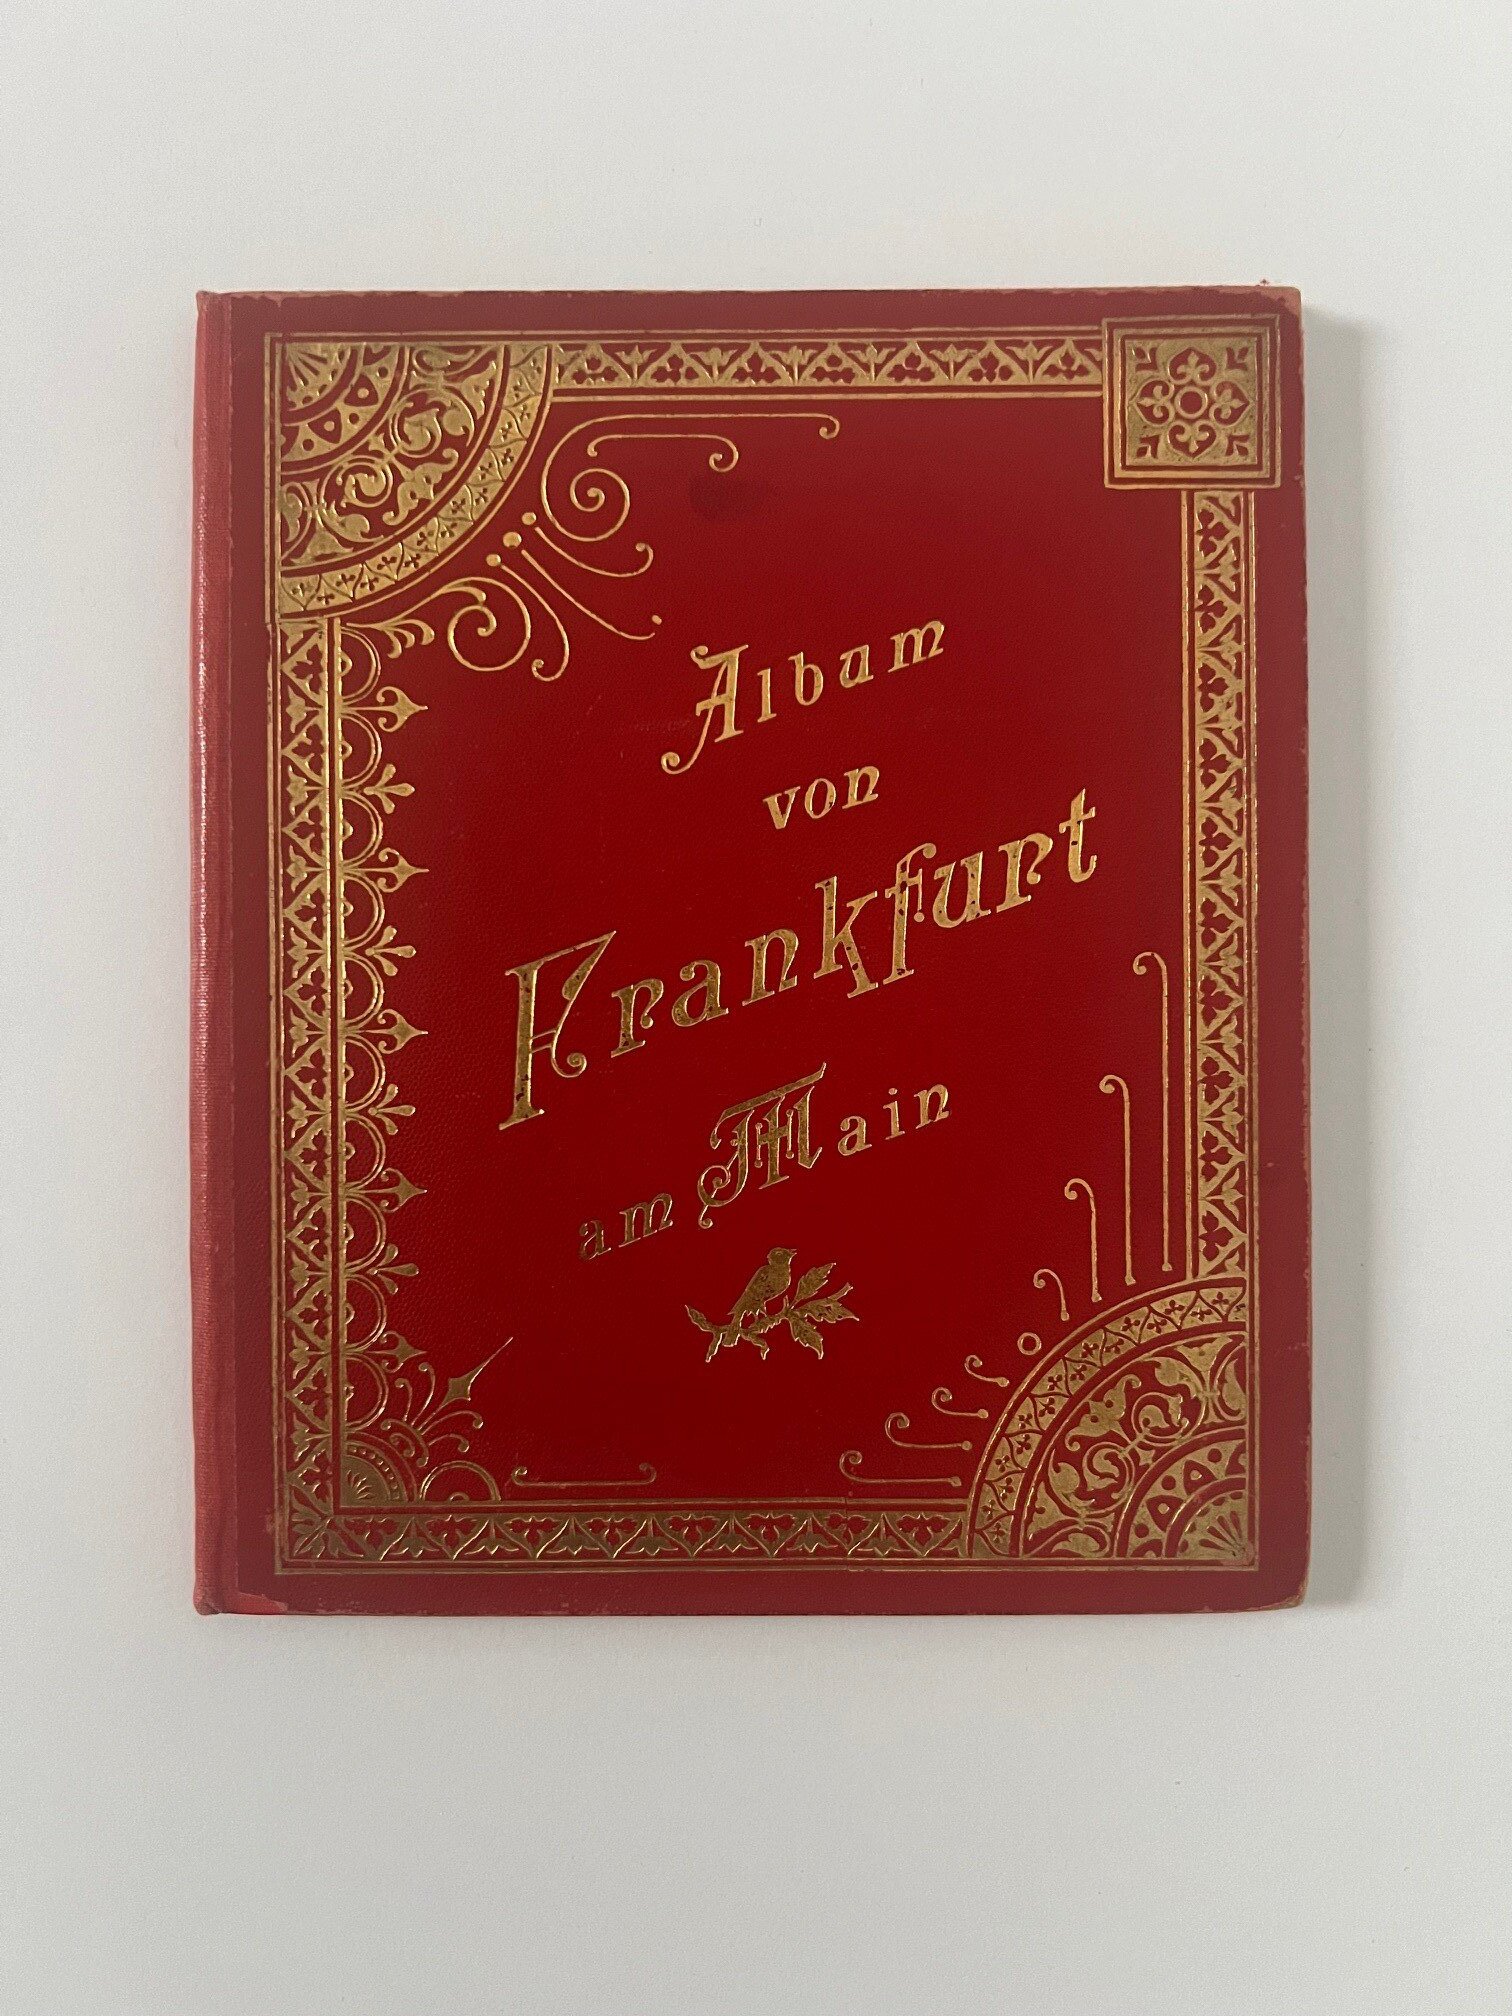 Verlag Gerhard Blümlein & Co, Album von Frankfurt am Main Rosen Ausstellung 1897, 35 Lithographien als Leporello, ca. 1896. (Taunus-Rhein-Main - Regionalgeschichtliche Sammlung Dr. Stefan Naas CC BY-NC-SA)